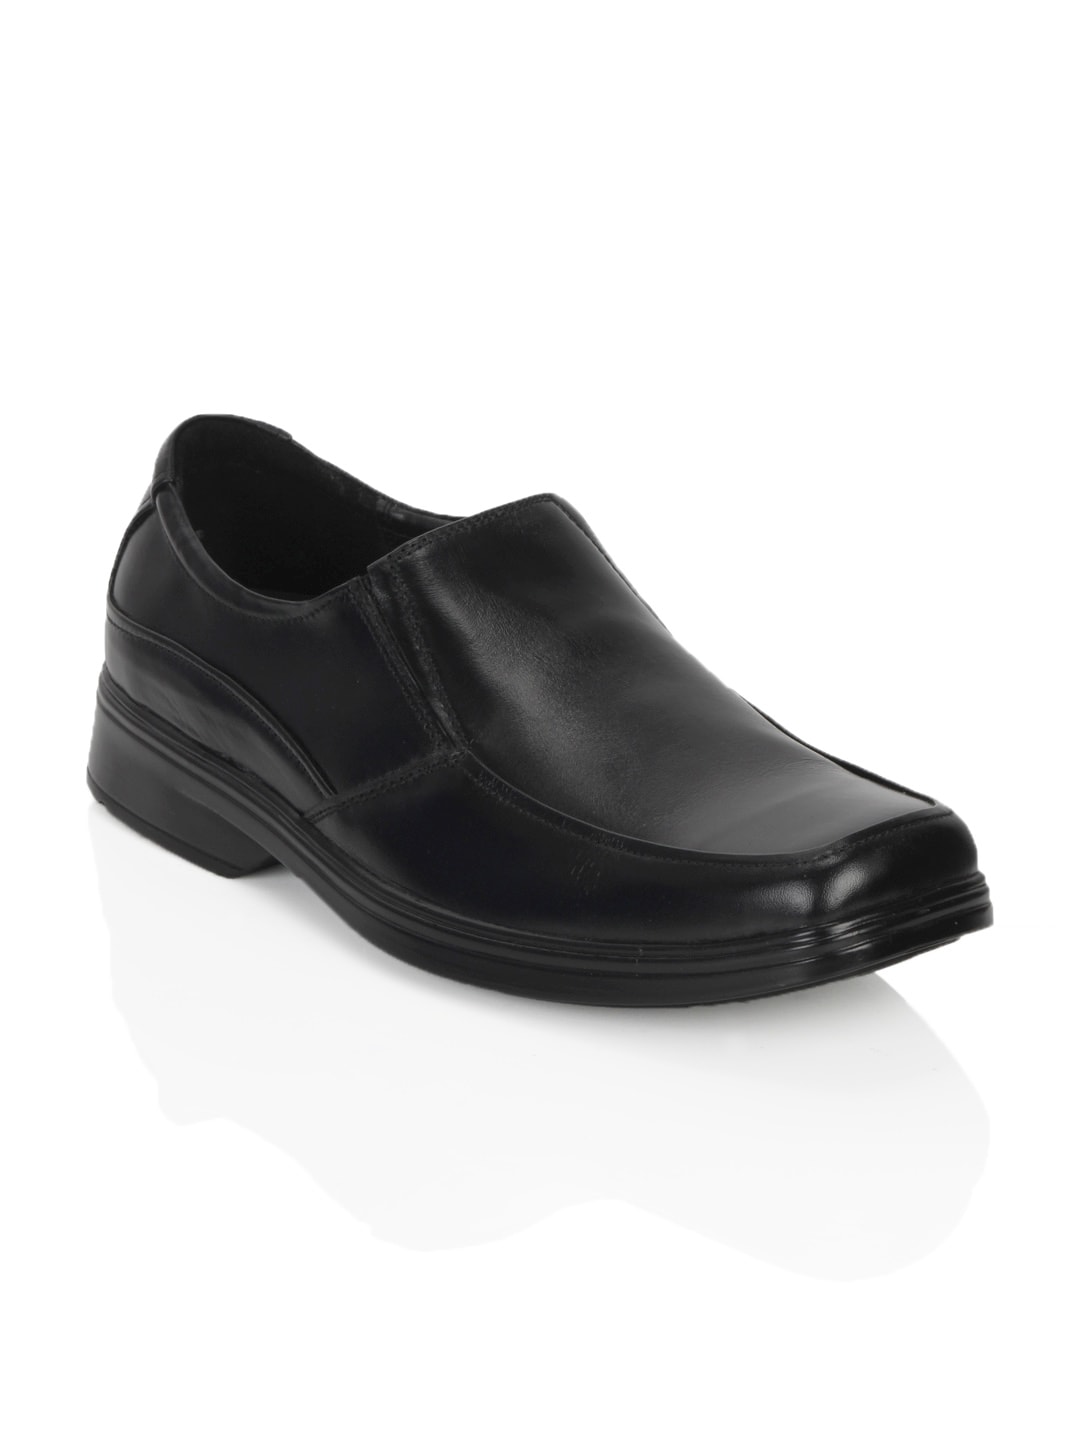 Bata Men Black Formal Shoes